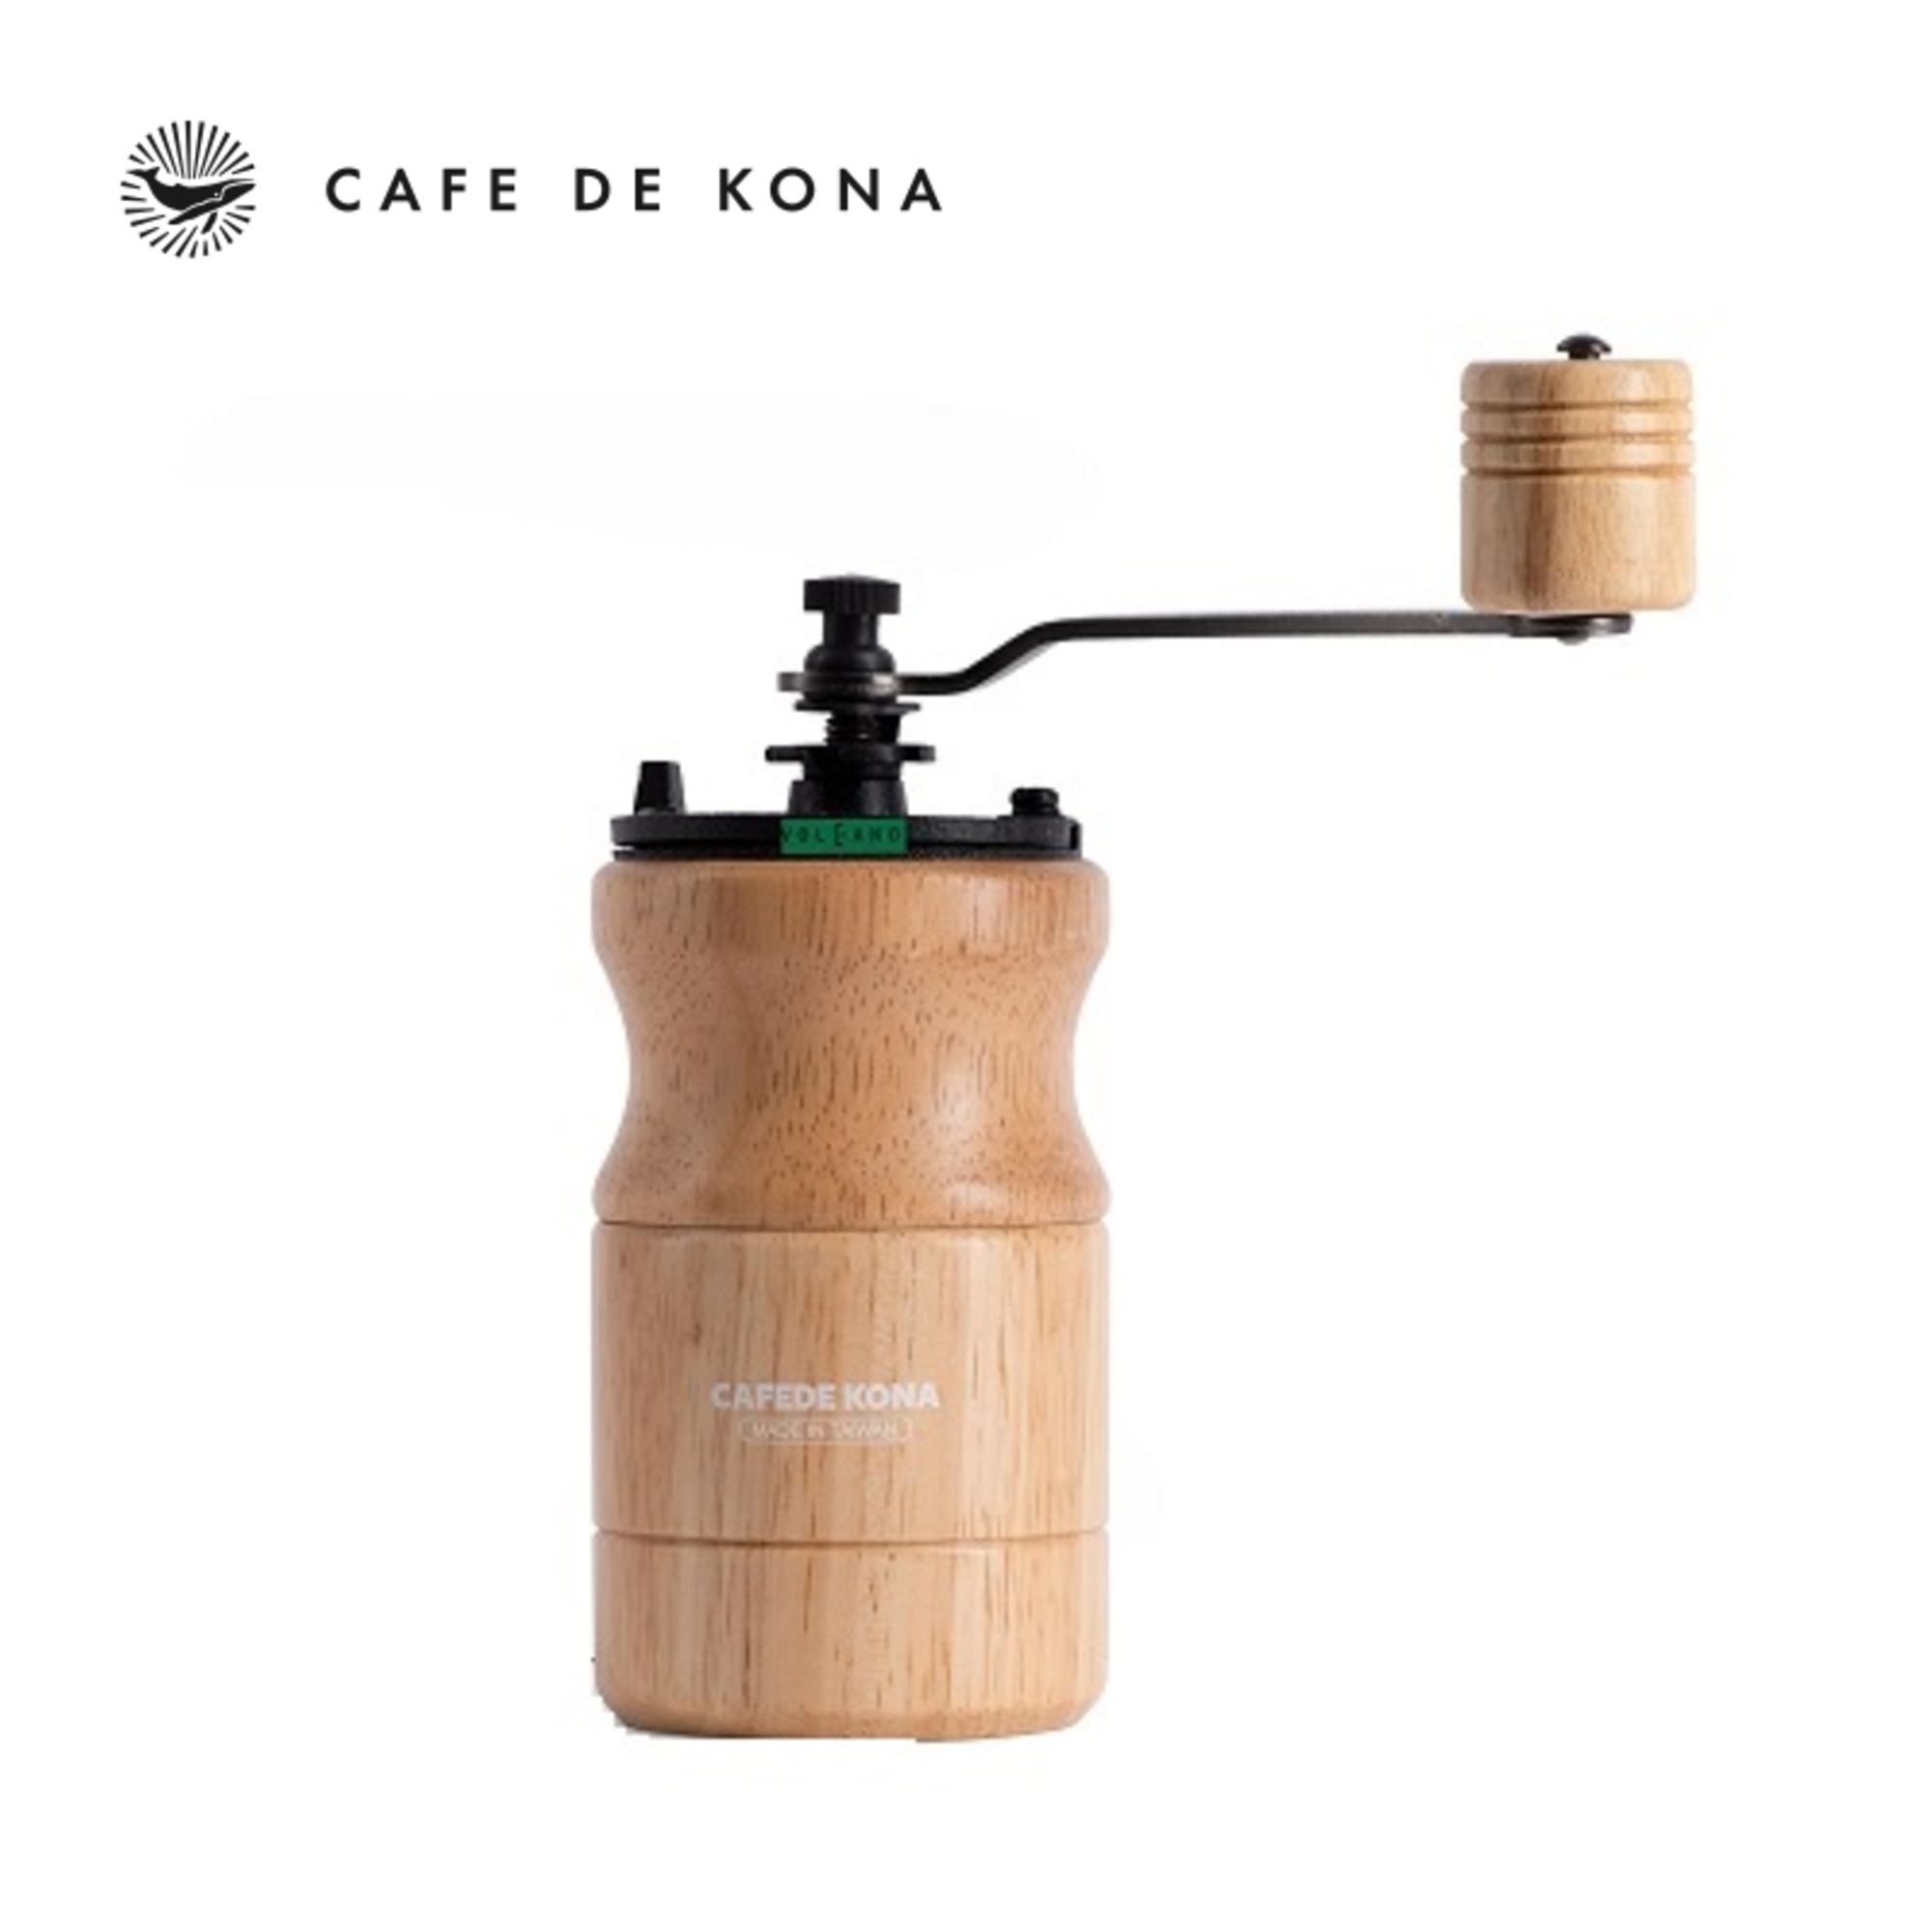 Cối xay cà phê thân gỗ lưỡi thép CAFE DE KONA